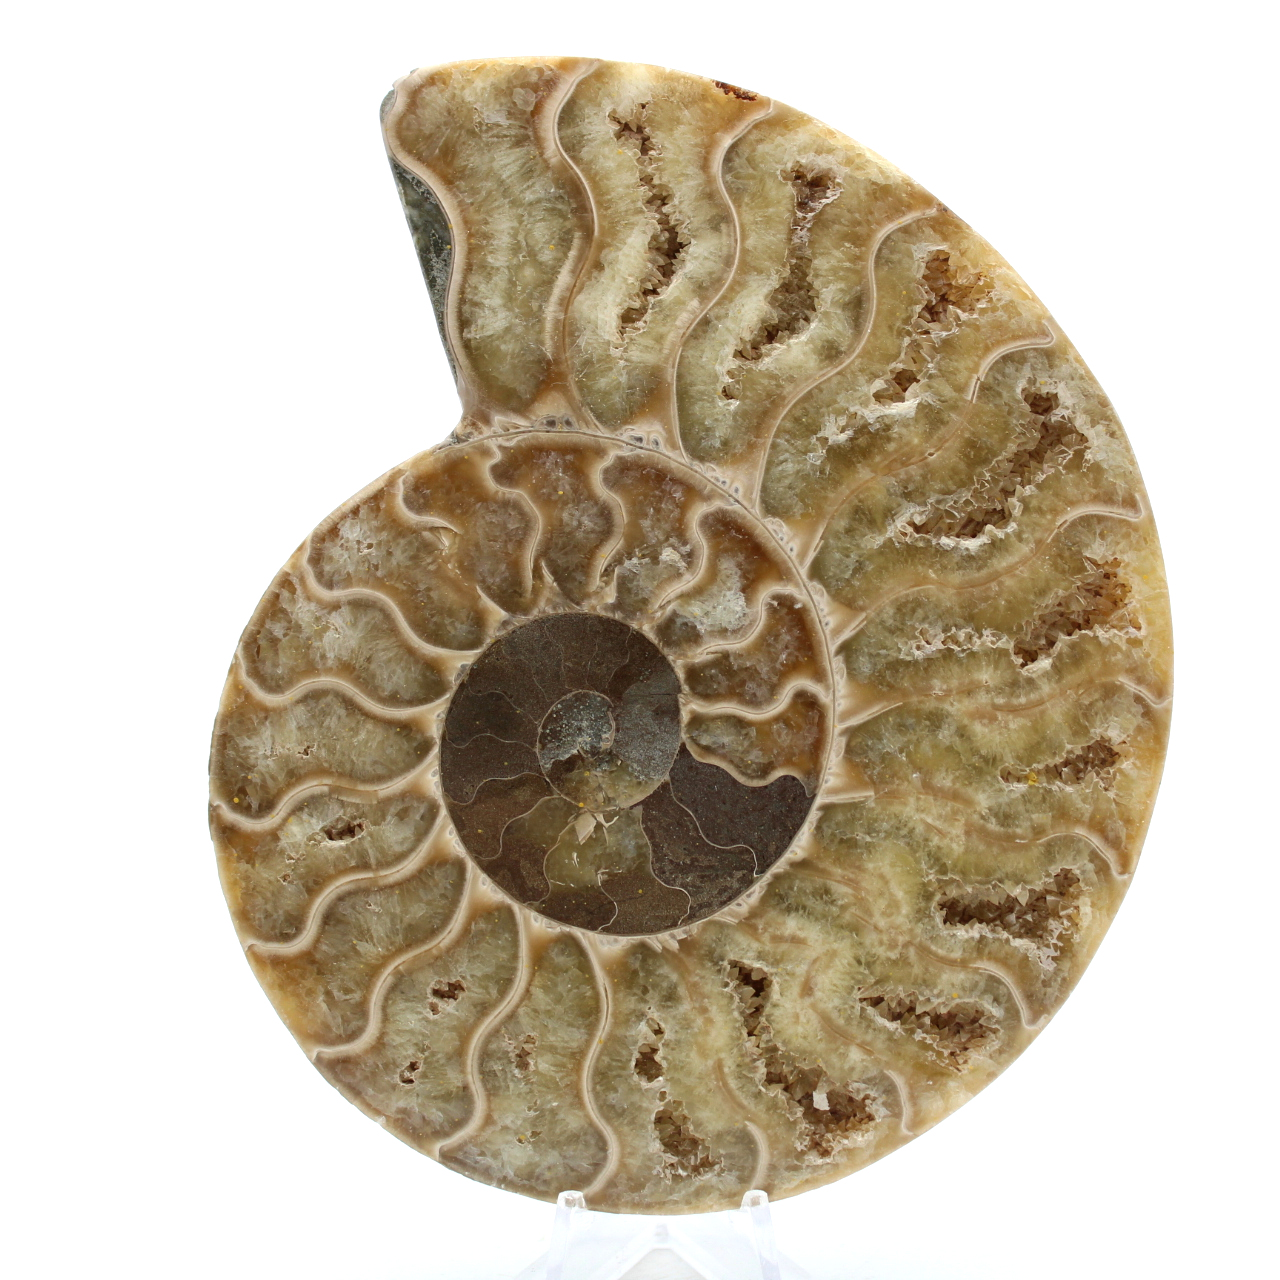 Polished fossilized ammonite